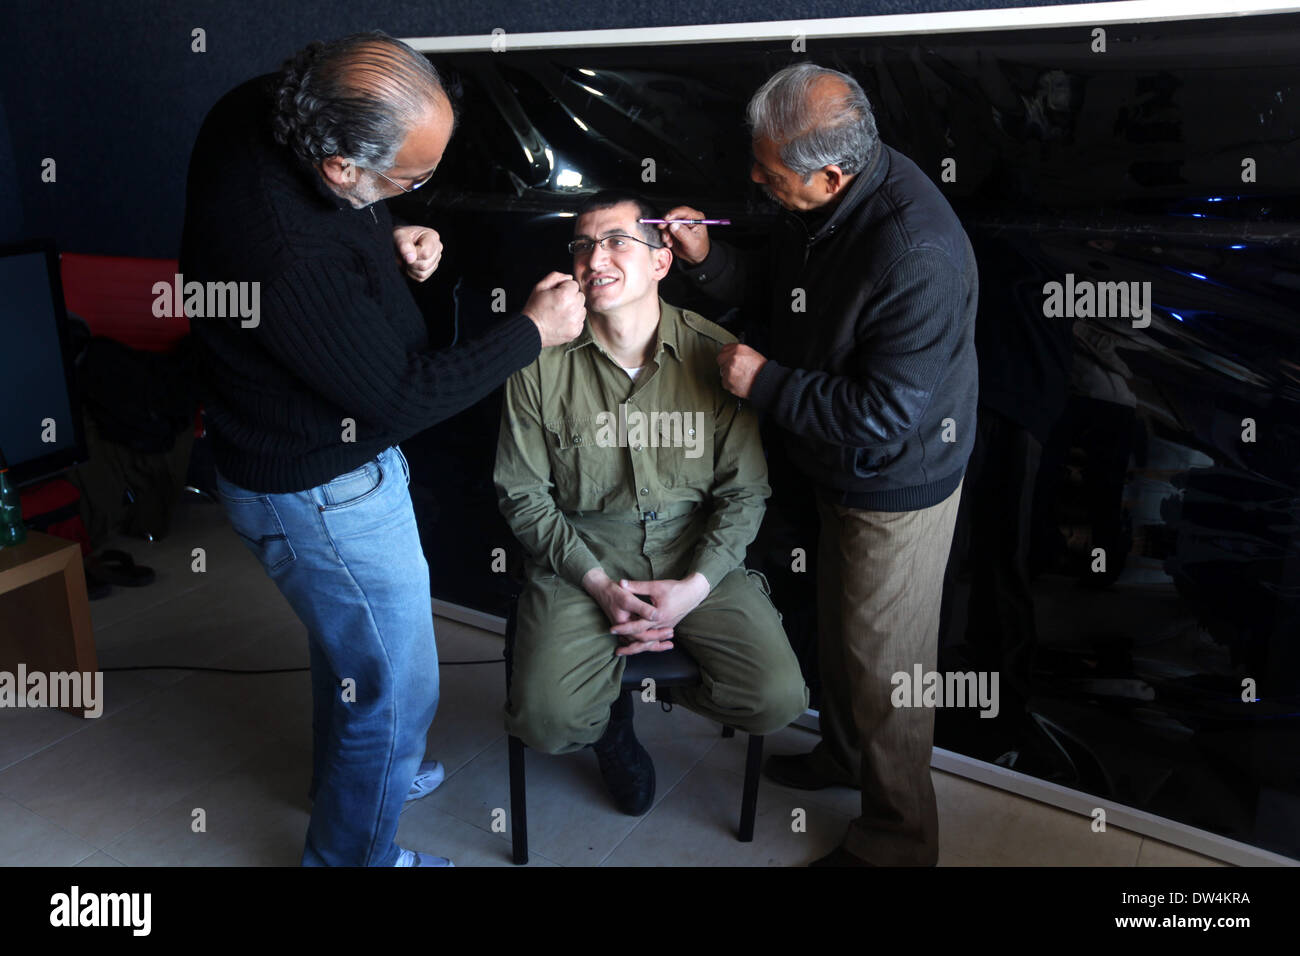 Gaza, Palästinensische Gebiete. 27. Februar 2014. Schauspieler Mahmoud Karira, der Gilad Schalit spielt, hat Make-up angewendet von einem Assistenten während der Dreharbeiten eines Films im Gaza-Streifen namens "Verlieren Shalit" gemacht. "Schalit verliert", derzeit in dem abgeriegelten Gebiet gefilmt wird, ist der erste einer geplanten dreiteiligen Serie über die 2006 Aufnahme des israelischen Soldaten Gilad Schalit von bewaffneten verbündete sich mit den islamischen Militanten Hamas-Bewegung. Teile zwei und drei werden Schalits Zeit in Gefangenschaft und seine 2011 Swap für Hunderte von palästinensischen Häftlinge durch Israel darzustellen. (Kredit-Bild: © Majdi Fathi/NurPhoto/ZUM Stockfoto